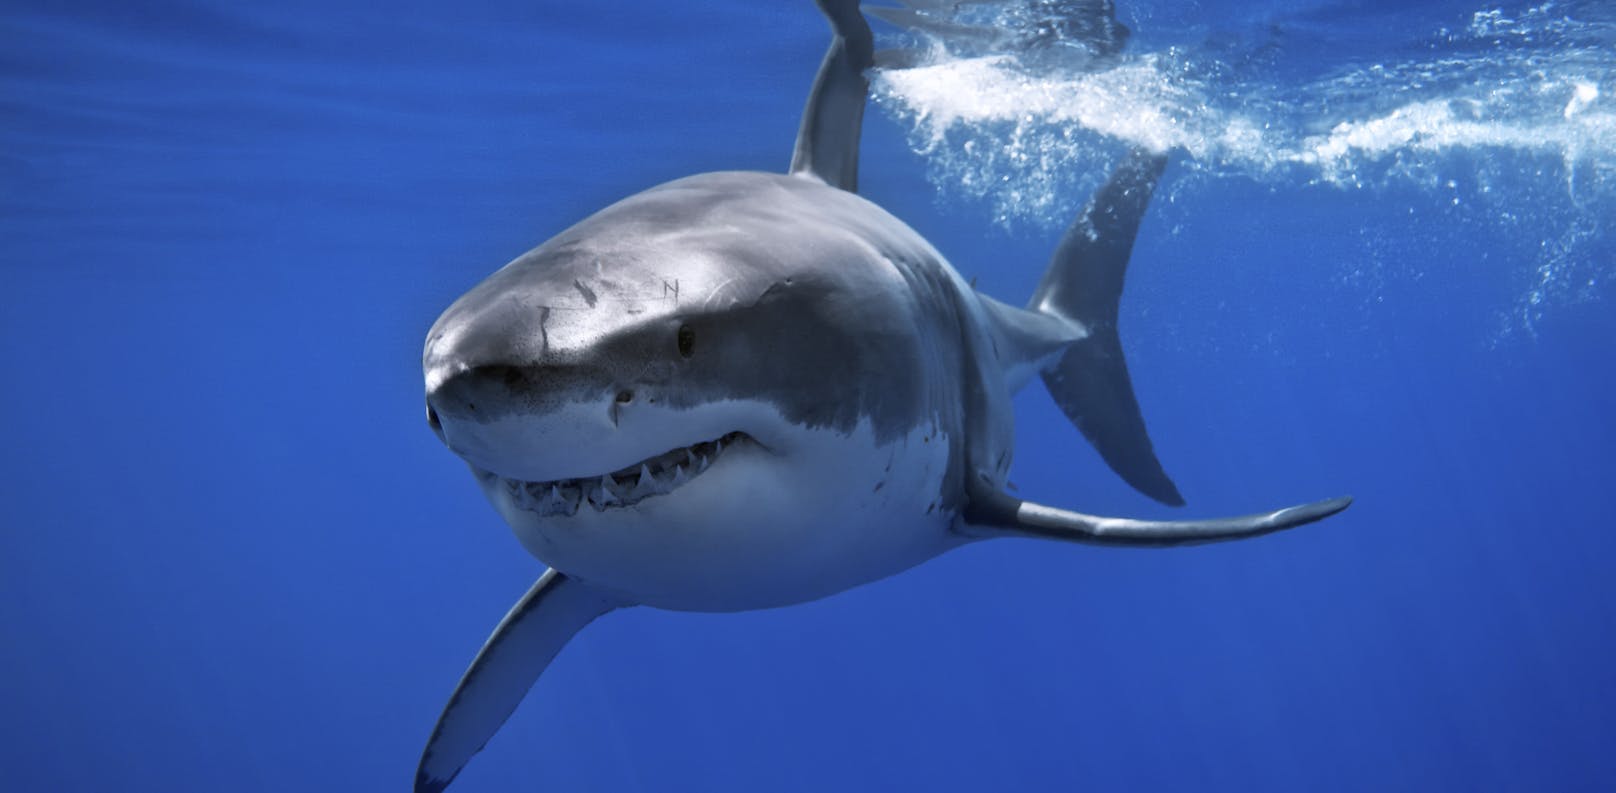 Jährlich sterben 3 Millionen Haie, weil sie einen bestimmten Stoff in der&nbsp;Leber erzeugen.